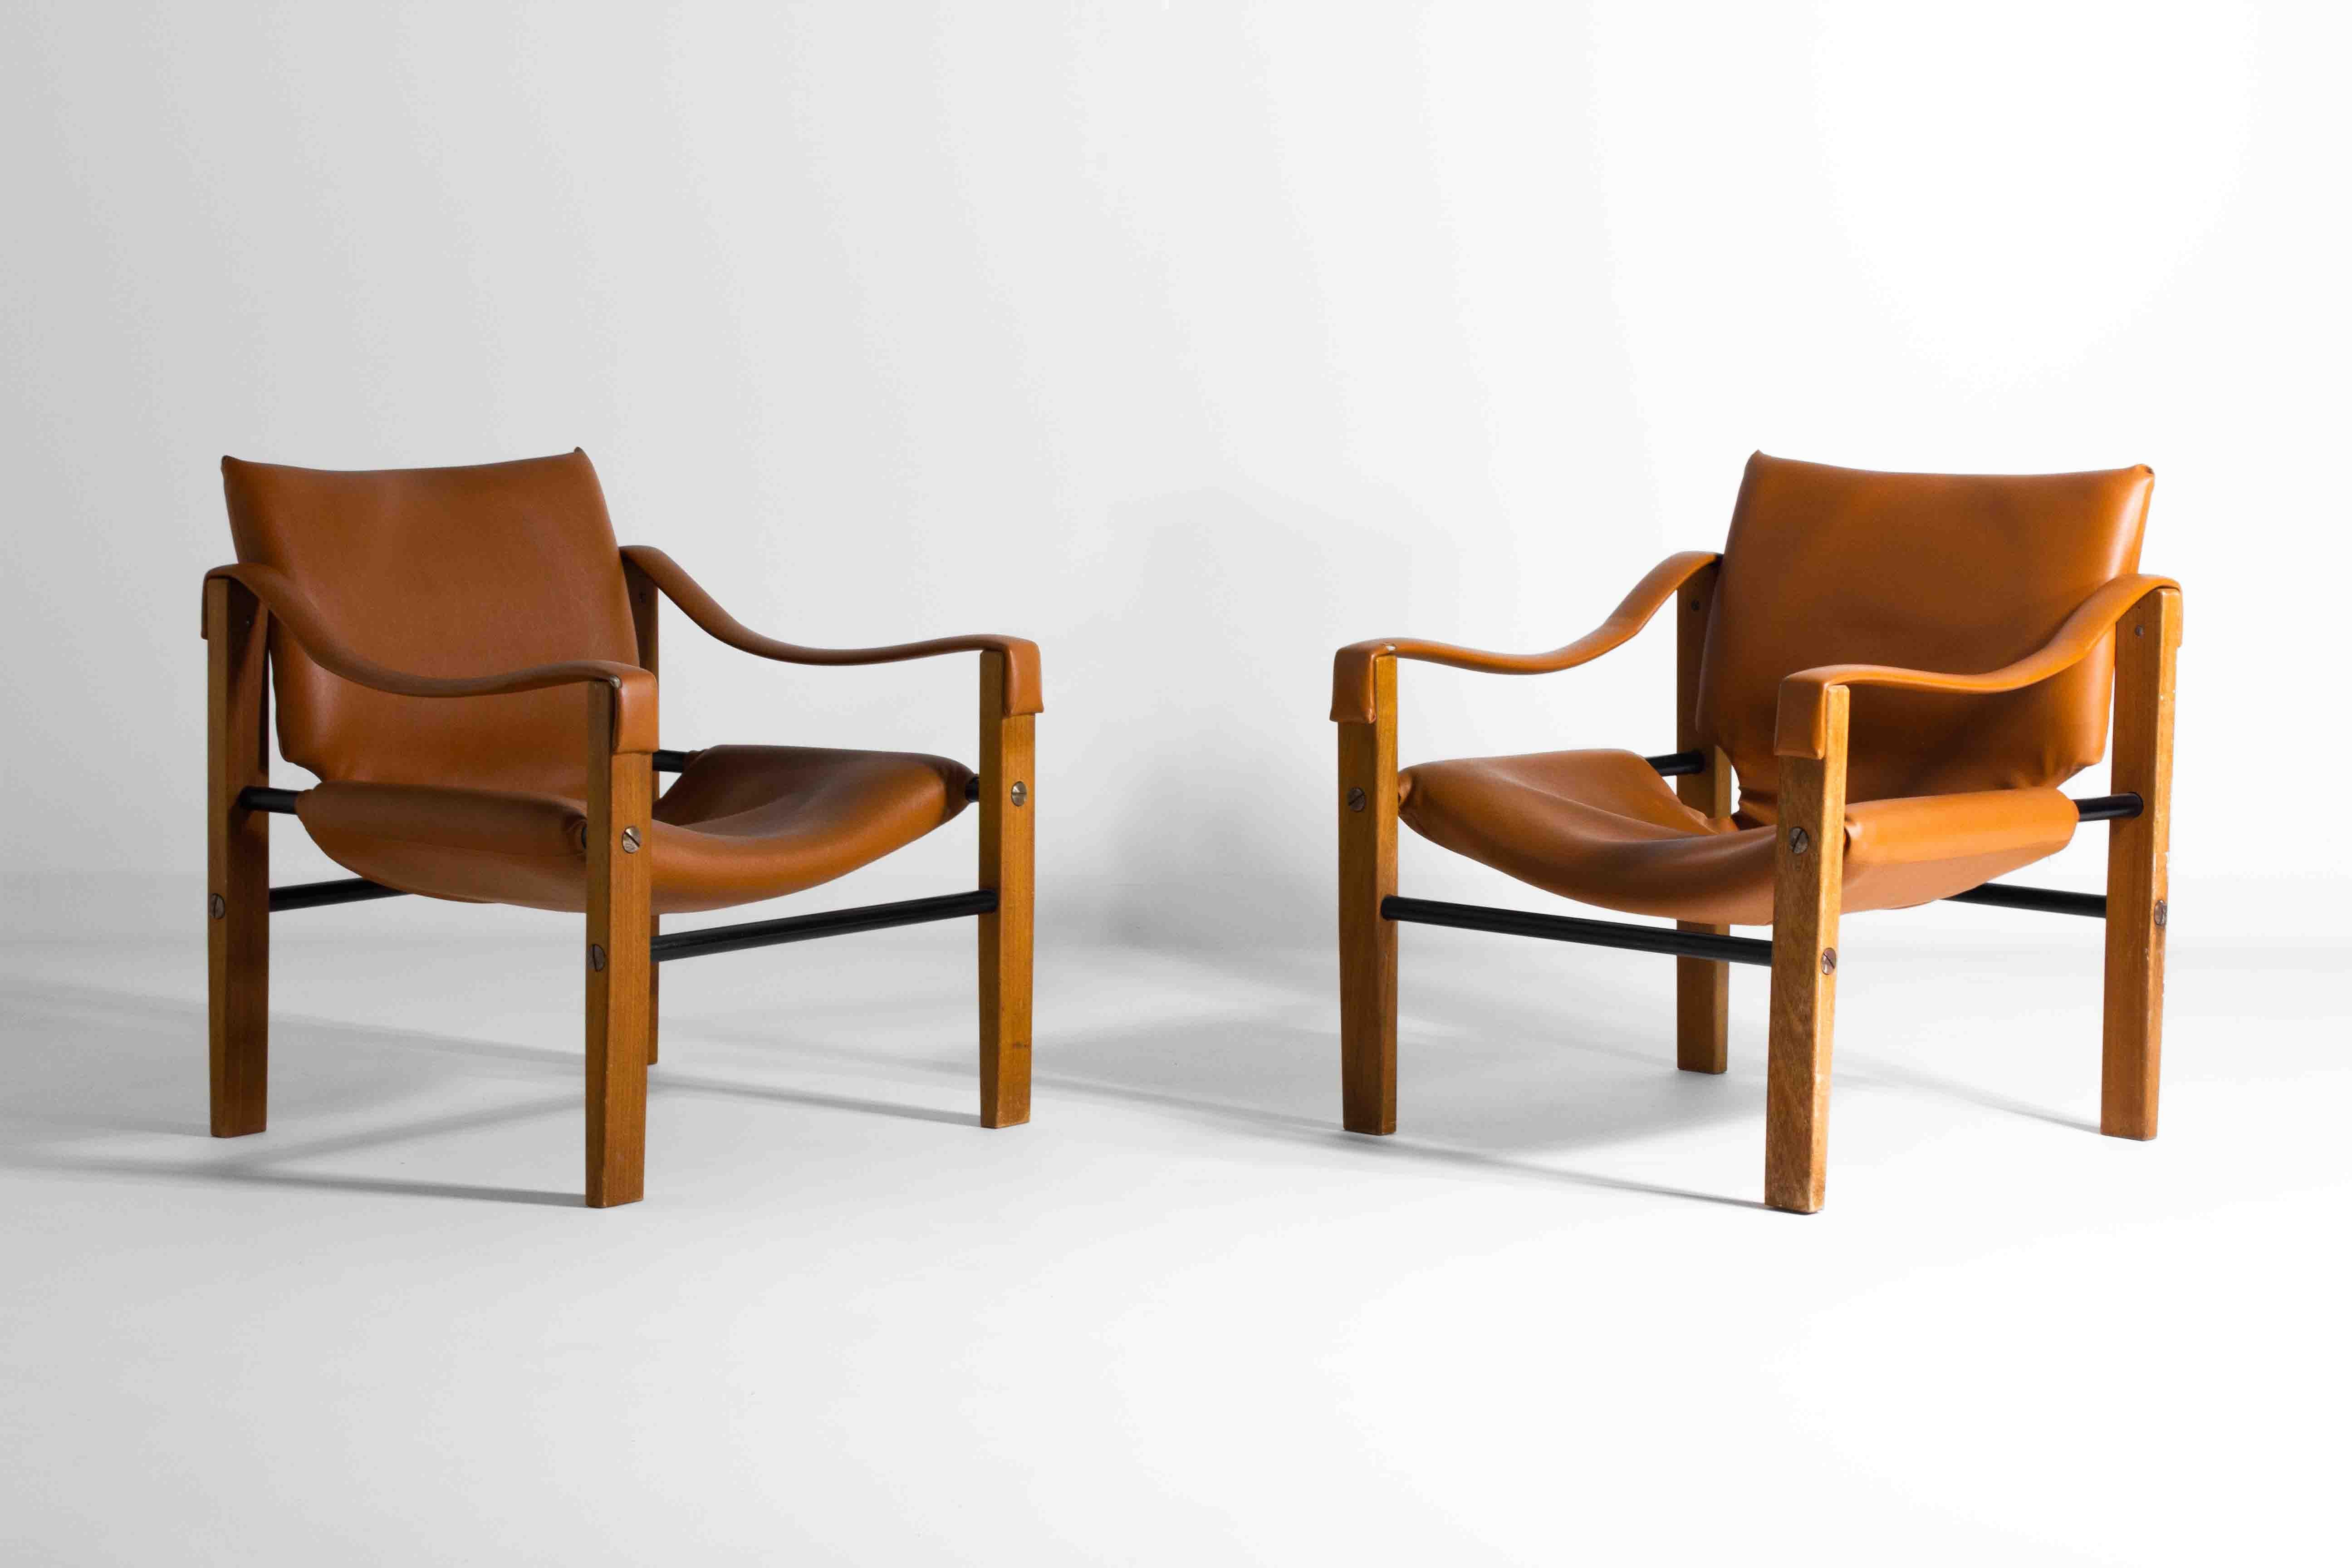 Peppen Sie Ihren Raum mit diesem Set aus zwei cognacfarbenen Lederstühlen von Maurice Burke für Arkana auf. Diese Stühle wurden entworfen, um die Essenz von Abenteuer und Raffinesse einzufangen, und sind in einem satten Cognac-Ton gehalten, der